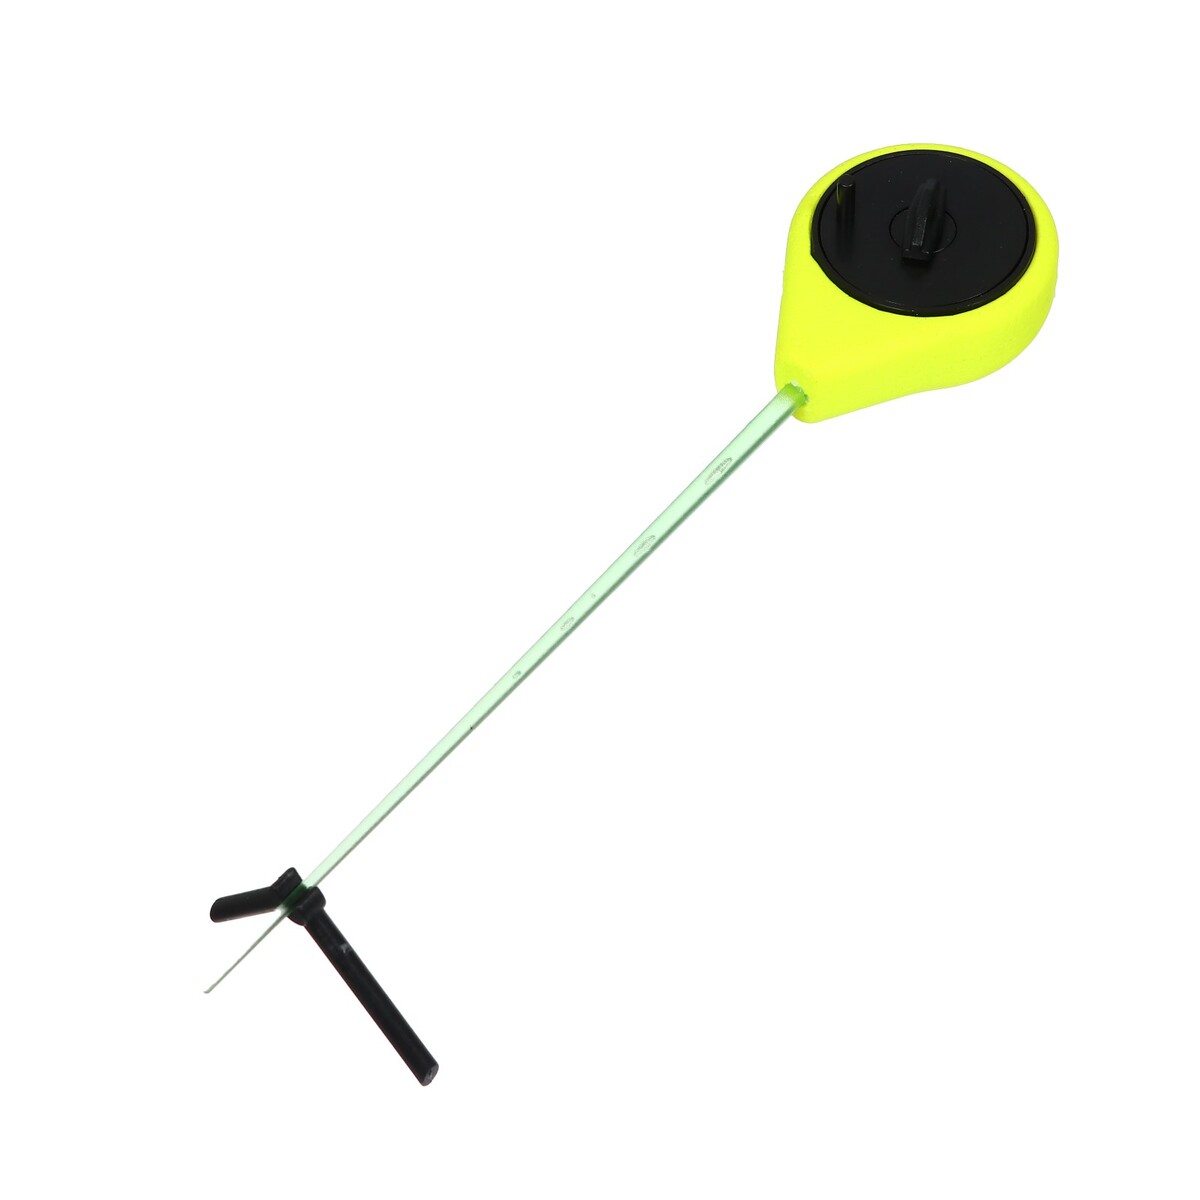 Удочка зимняя балалайка, цвет черный желтый, hfb-43 удочка зимняя ручка неопрен диаметр катушки 9 5 см hfb 1m